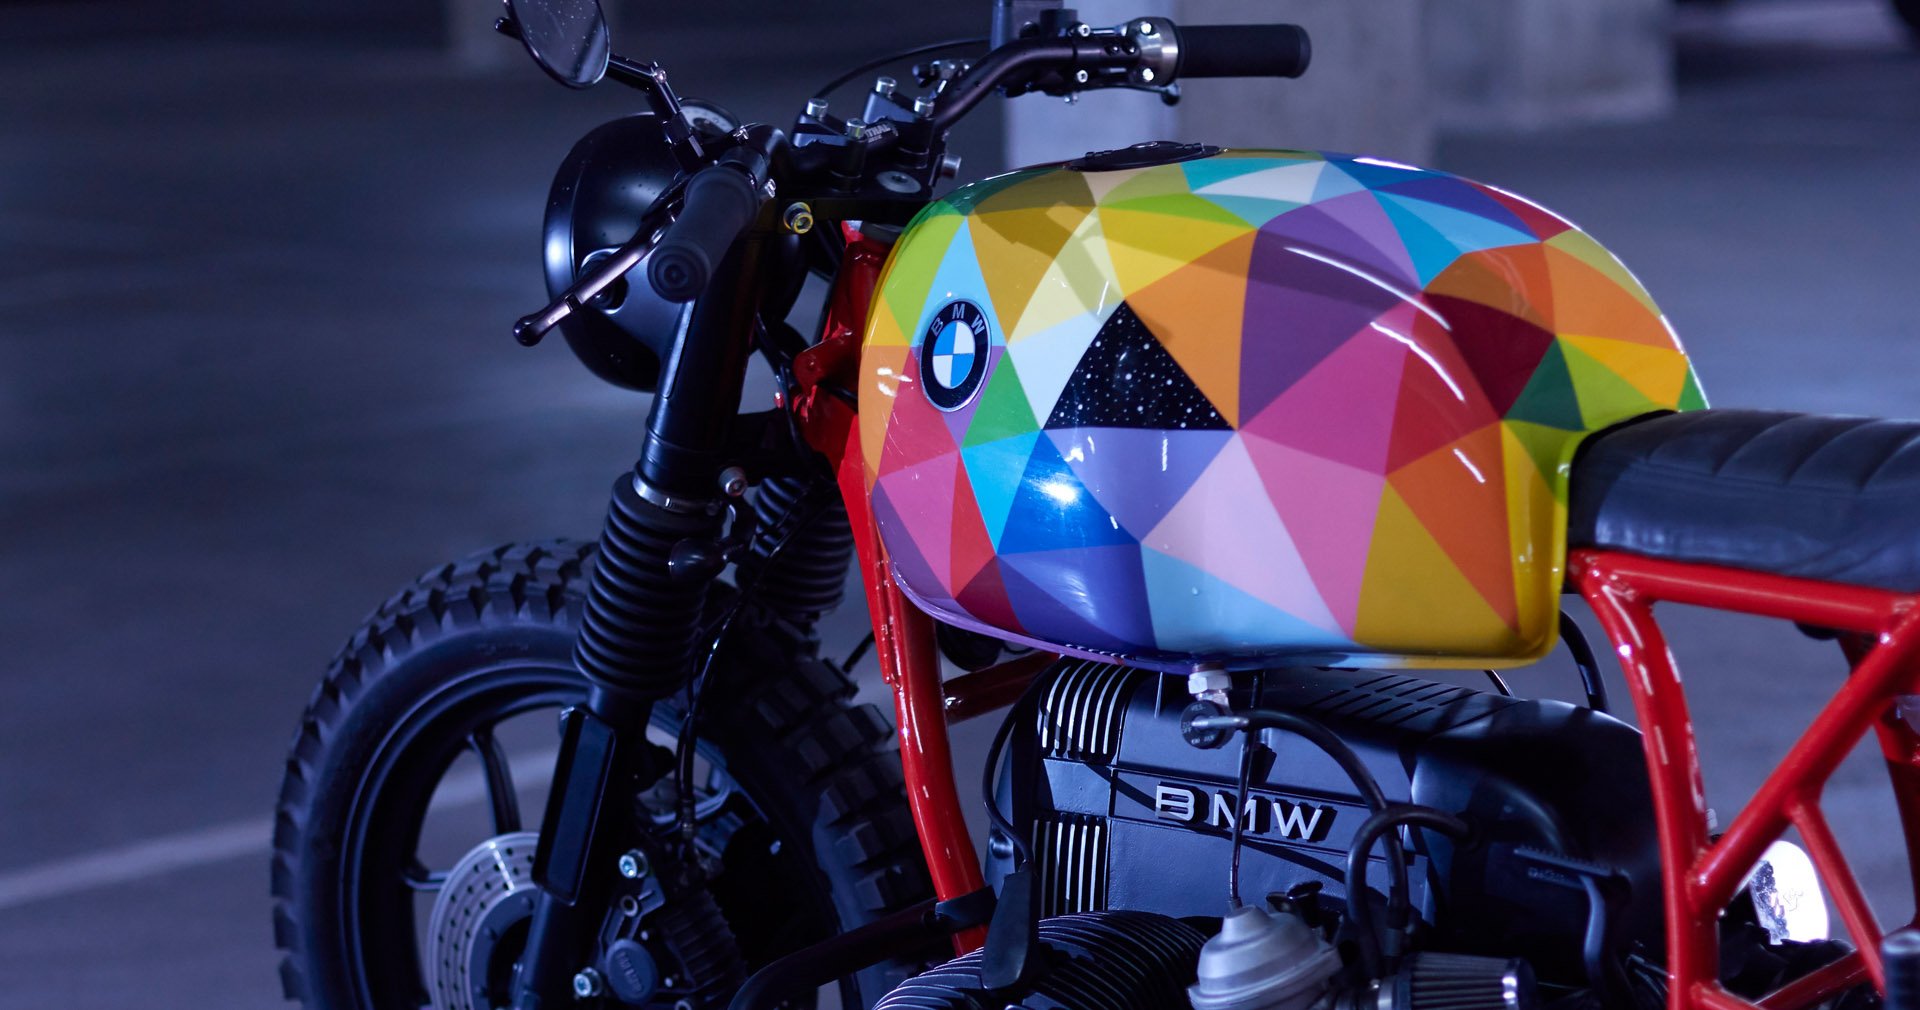 CRD93 BMWR65 – The Art Bike